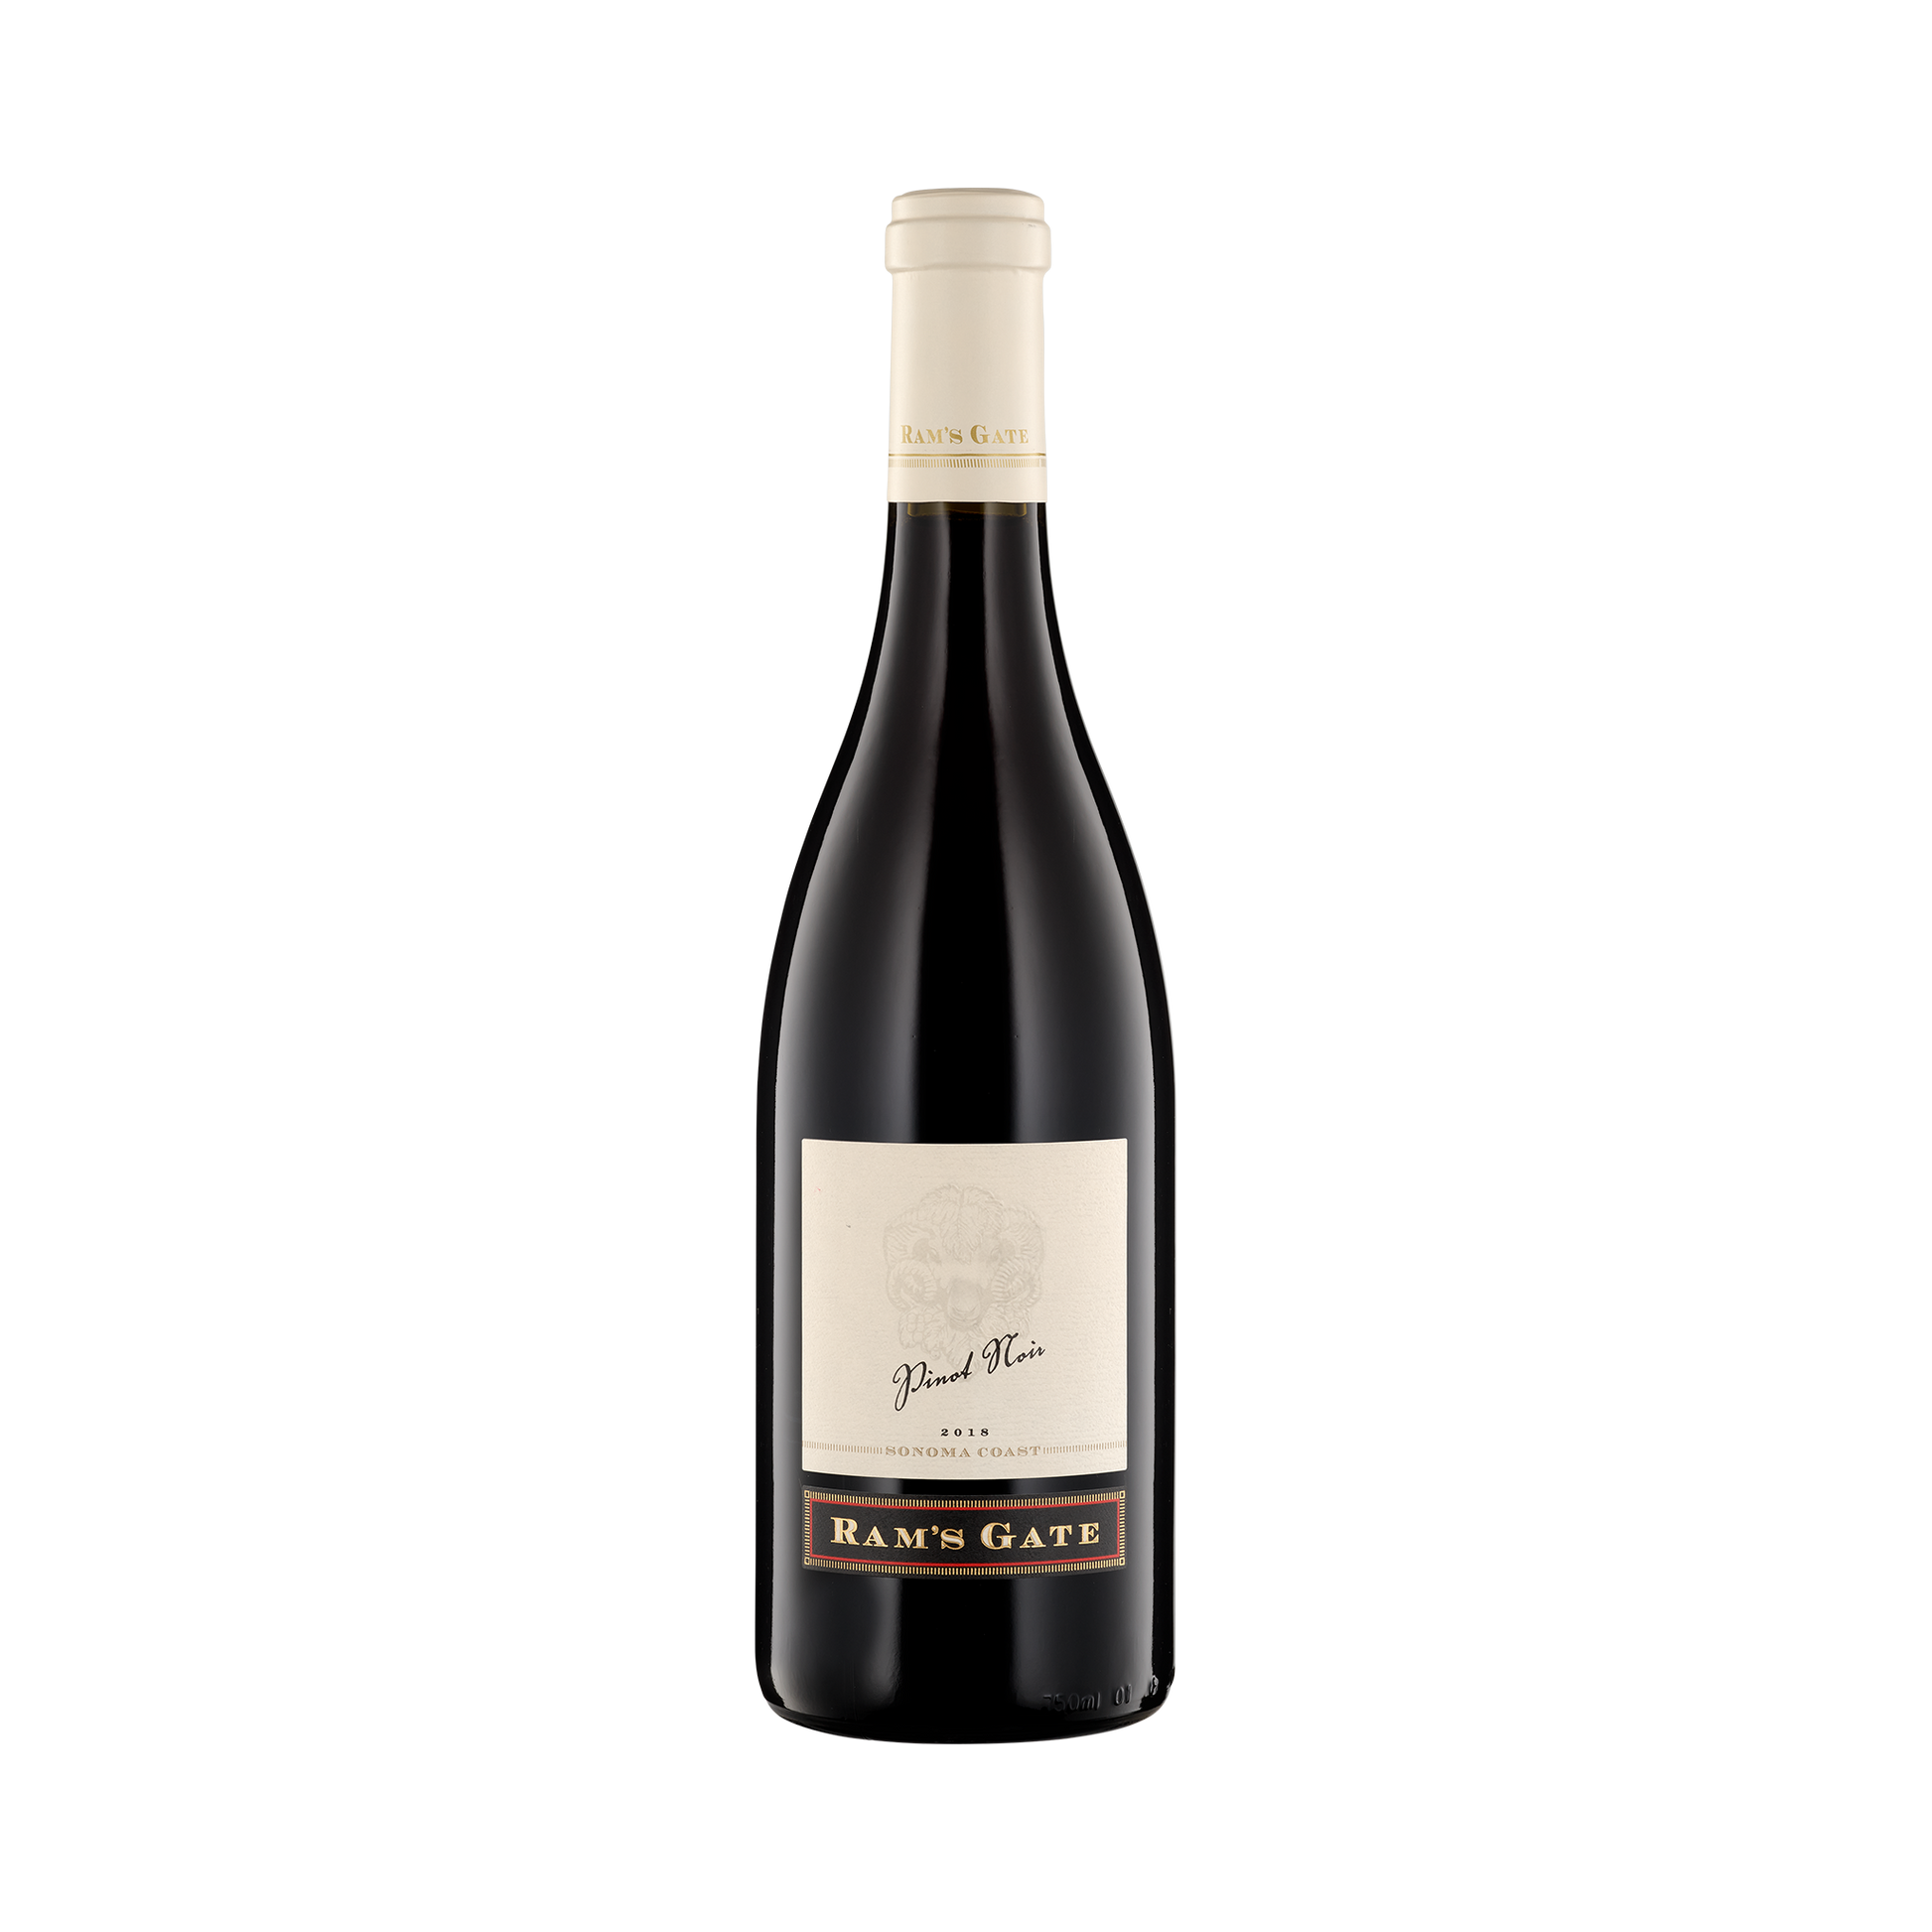 A bottle of Ram's Gate Winery 2018 Pinot Noir